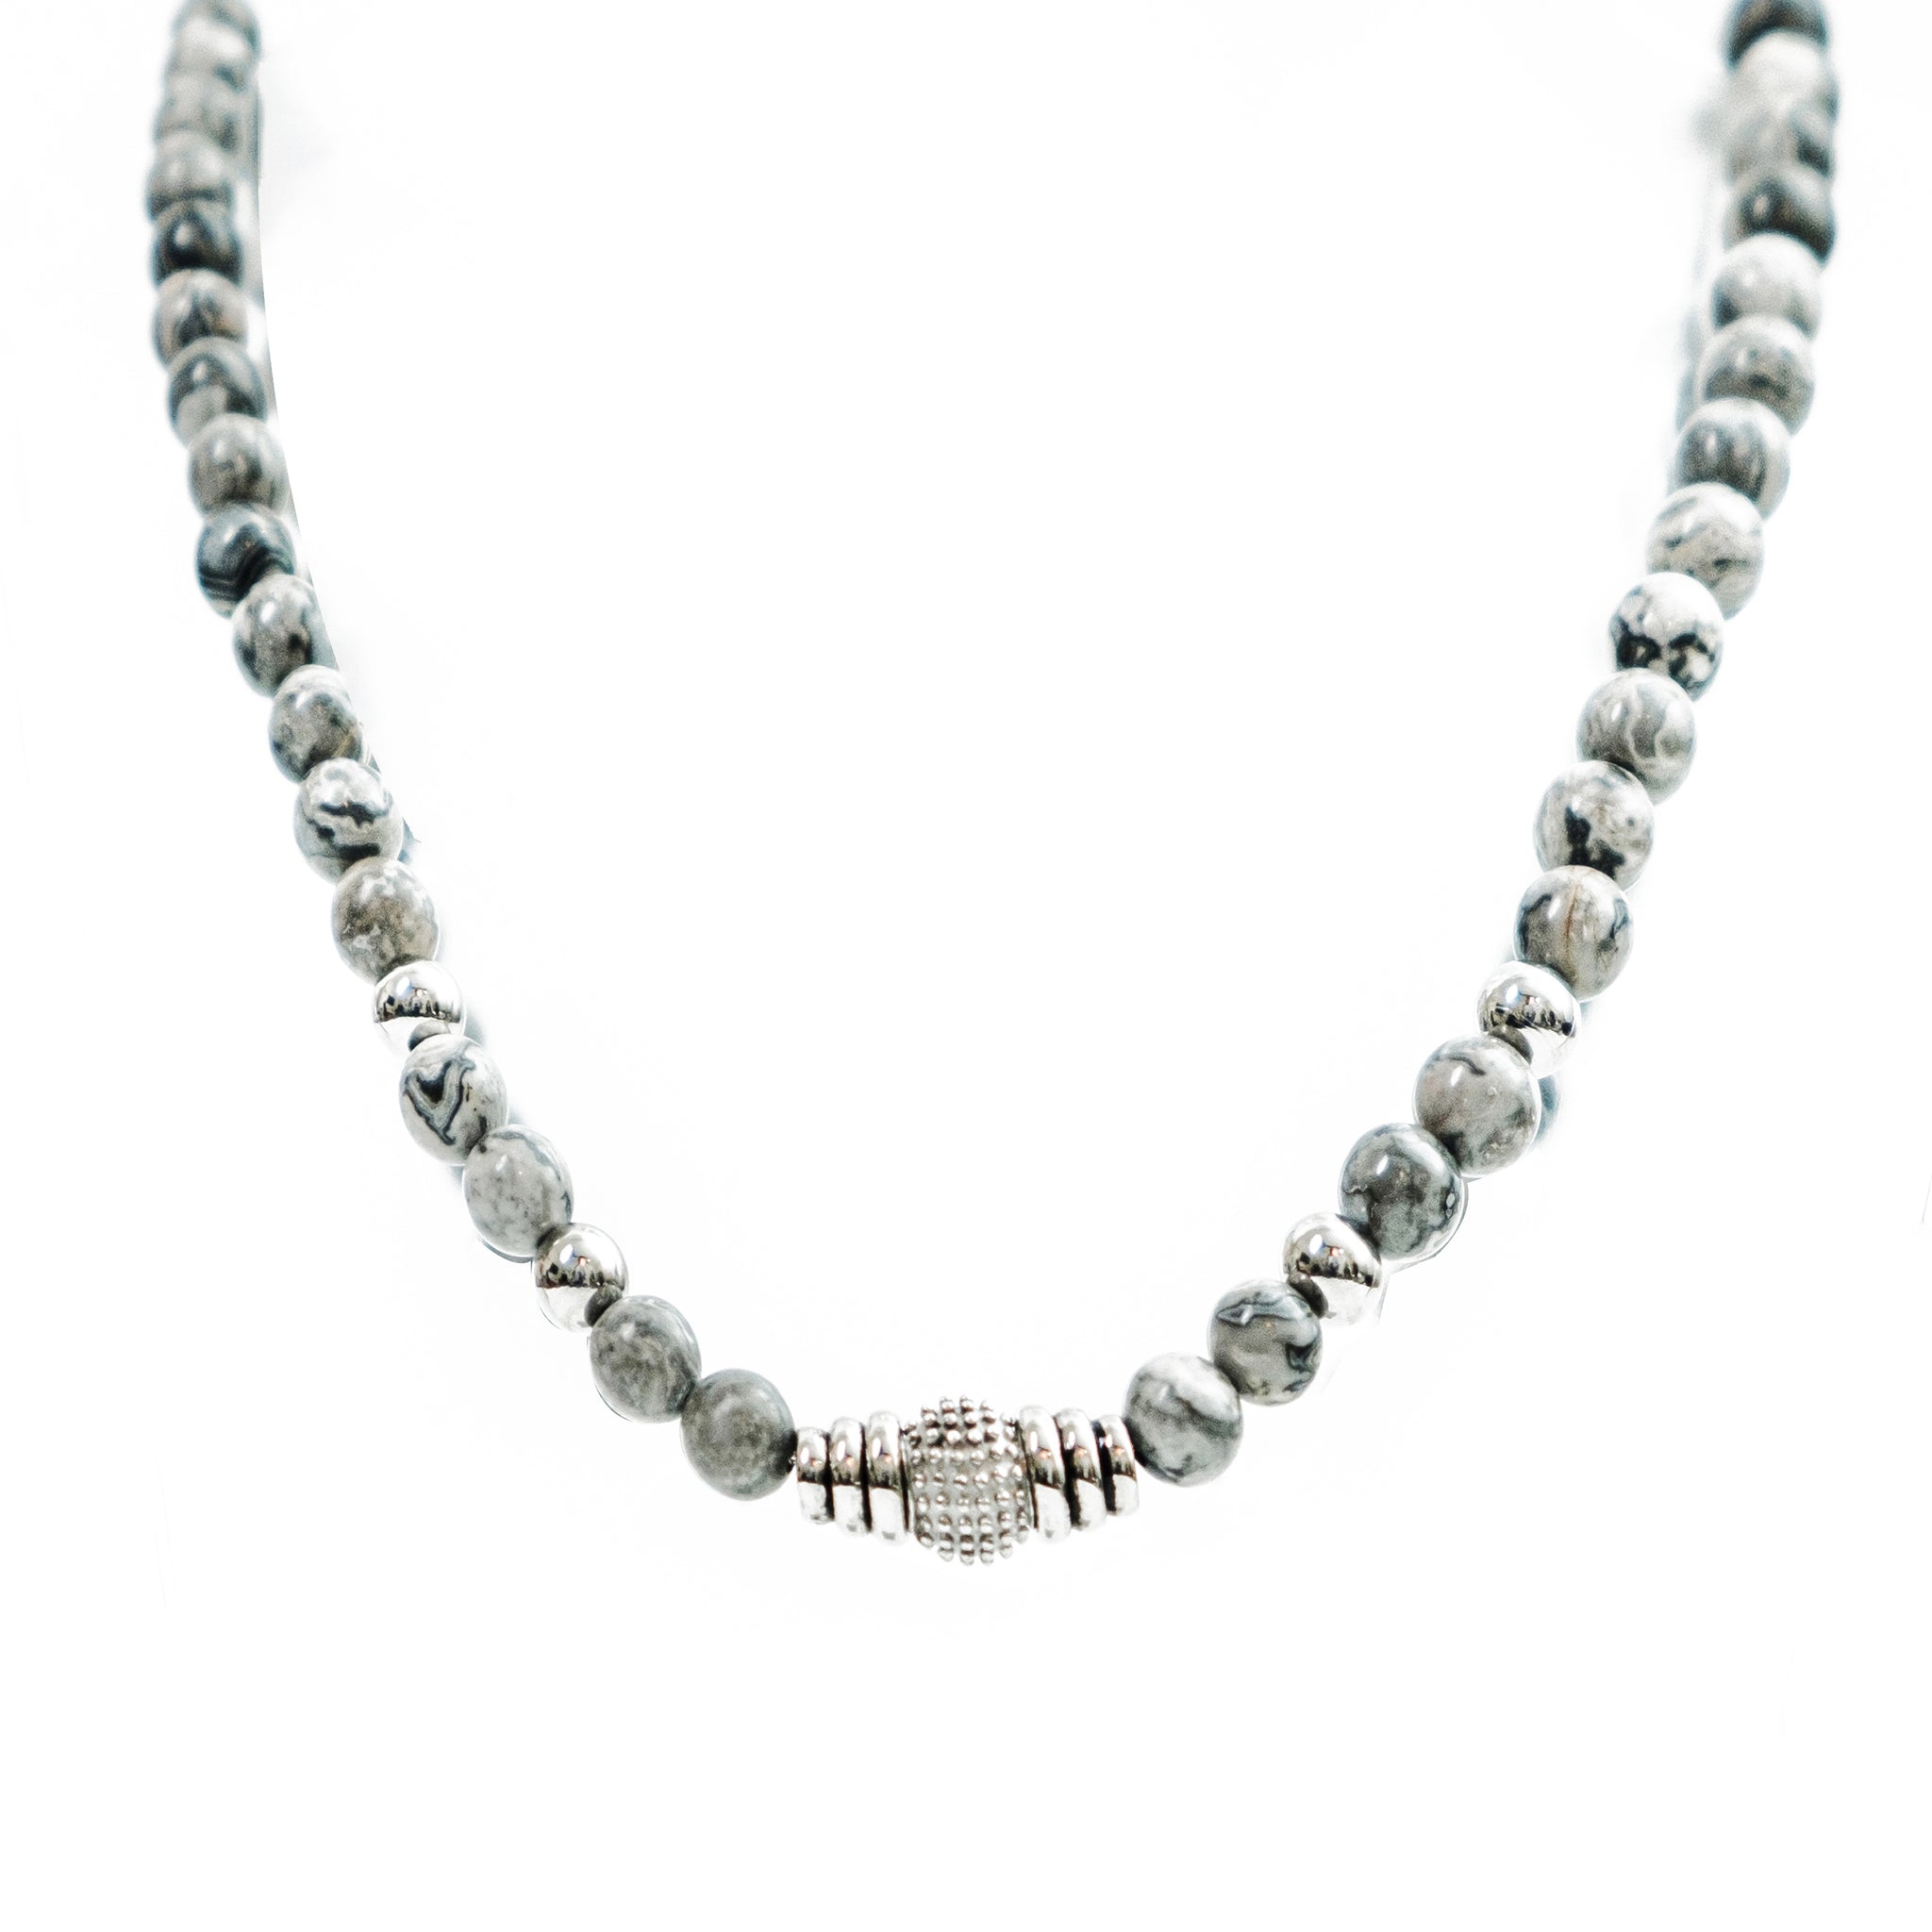 Chokore Picasso jasper Beads Necklace